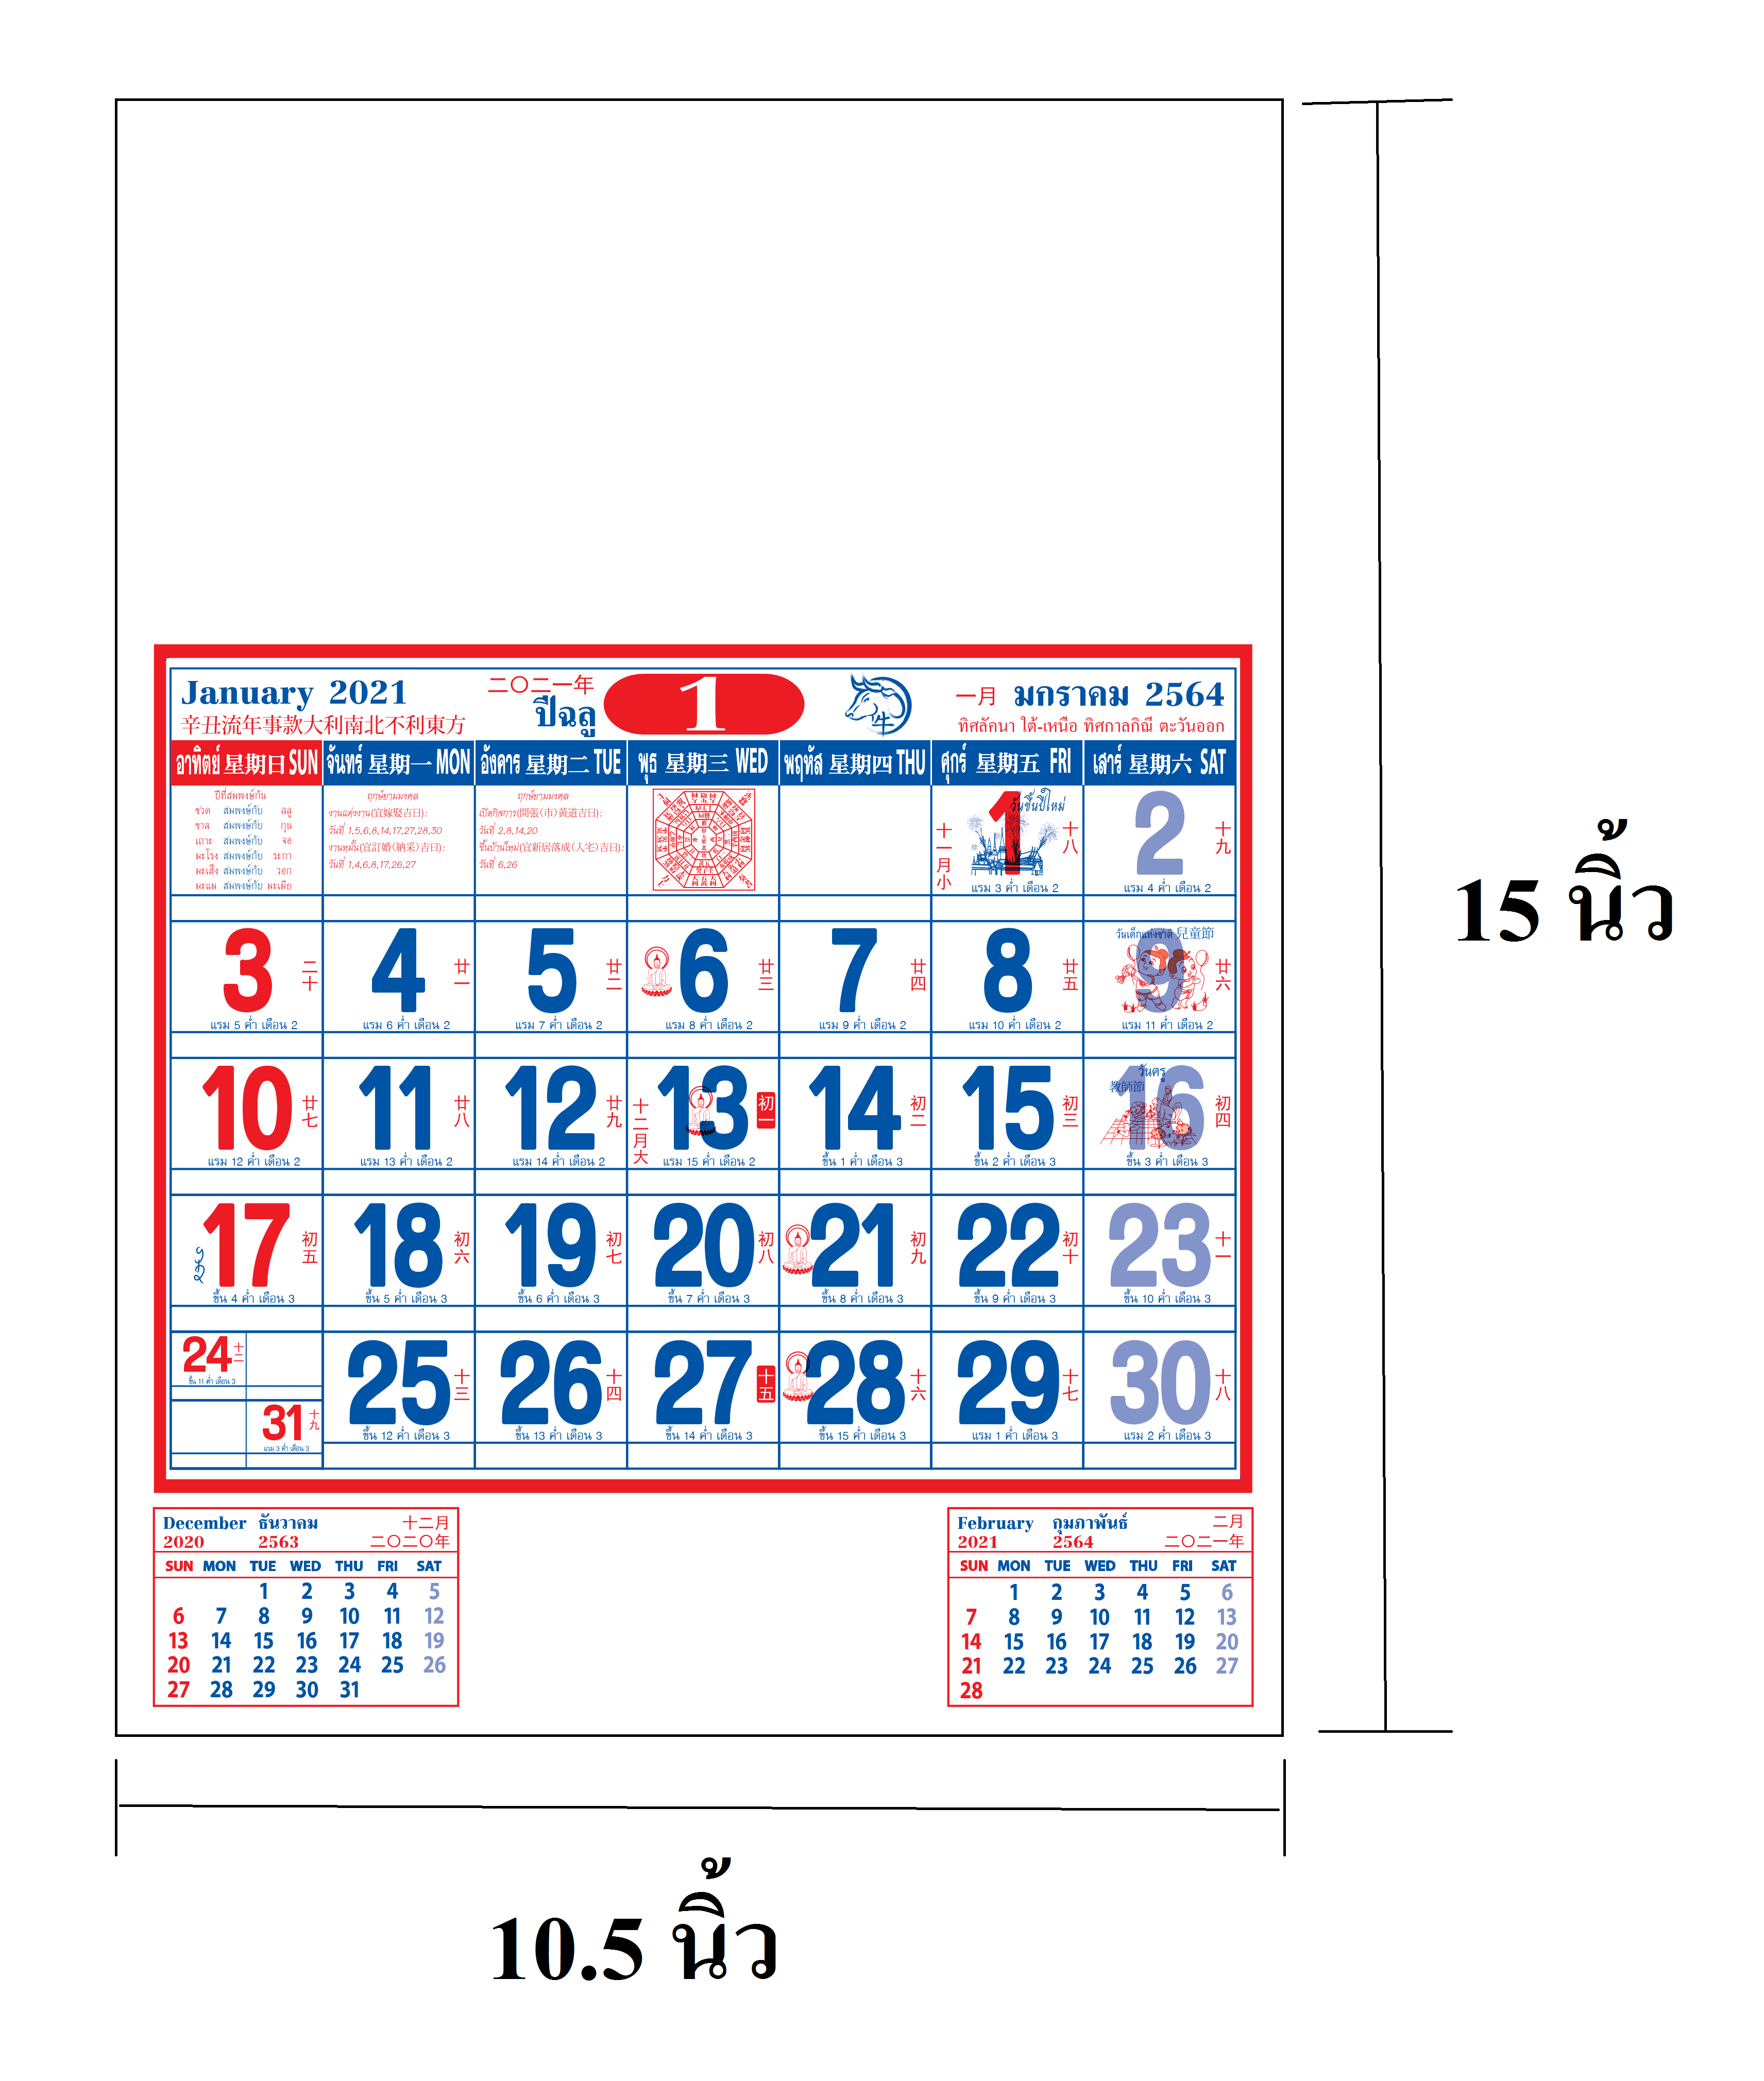 ปฎิทินแขวน2564 Calendar2021  ปฏิทินน่ำเอี้ยง ปฎิทิน64 21 ปฏิทินโปสเตอร์ ปฎิทิน แขวนจีน แพลนเนอร์ planner planer ปฏิทิน2564 ปฏิทิน2021 ปฏิทินตั้งโต๊ะ2564